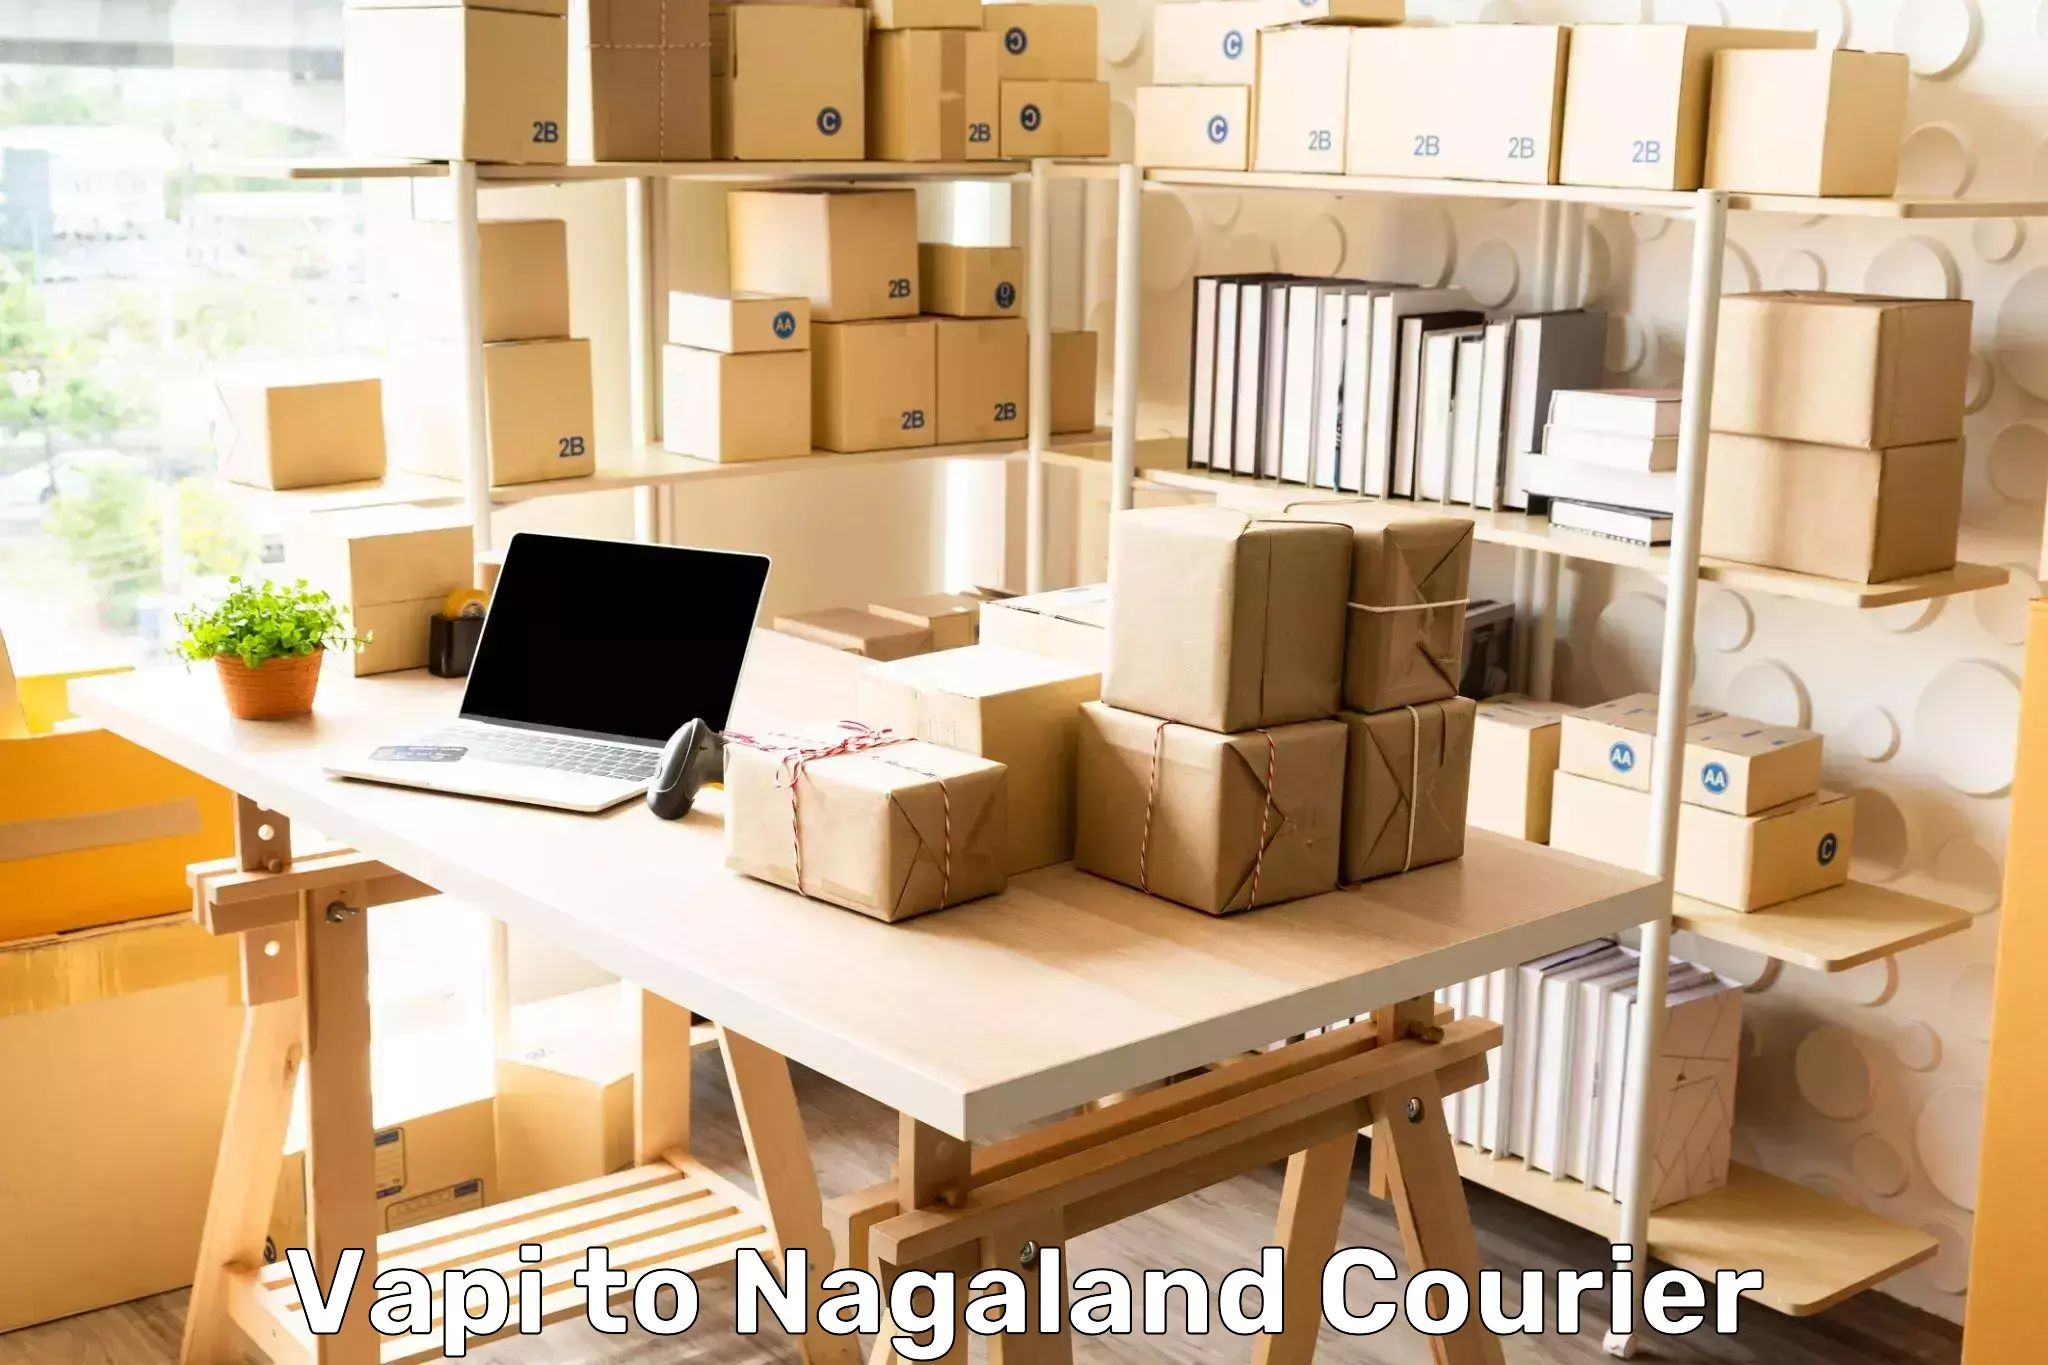 Advanced tracking systems Vapi to Nagaland